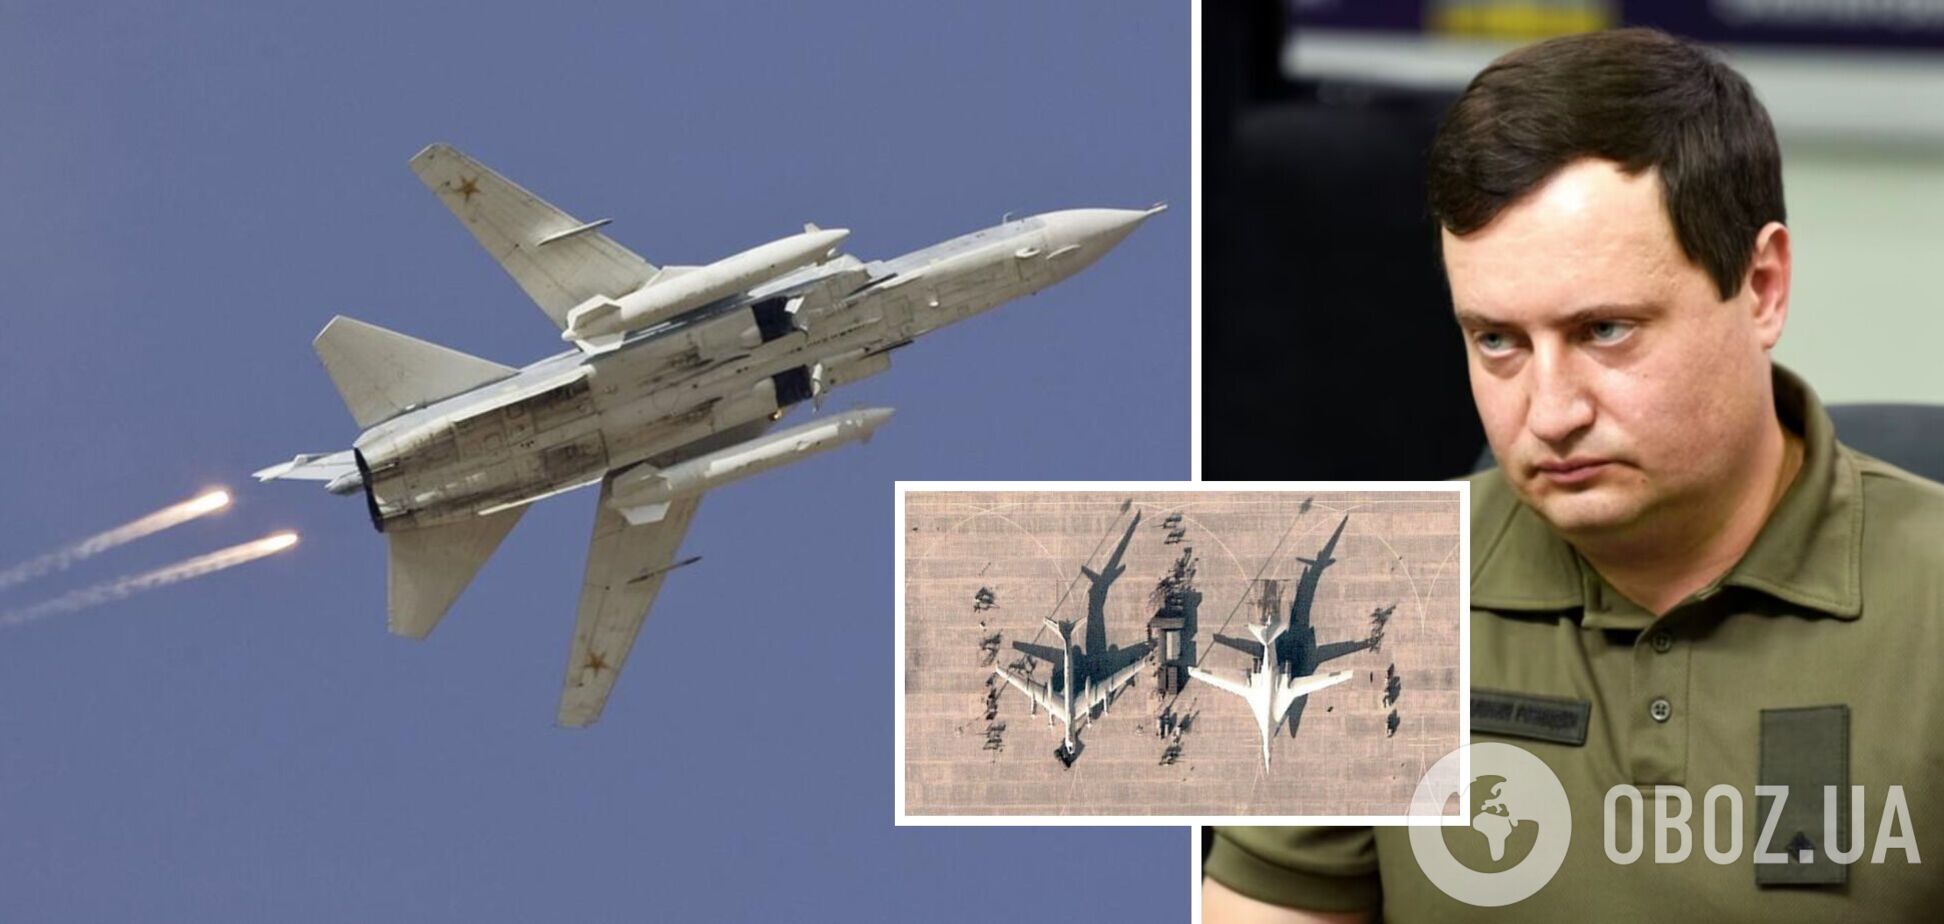 Андрей Юсов рассказал, какое количество тактической авиации есть на западе страны-агрессора